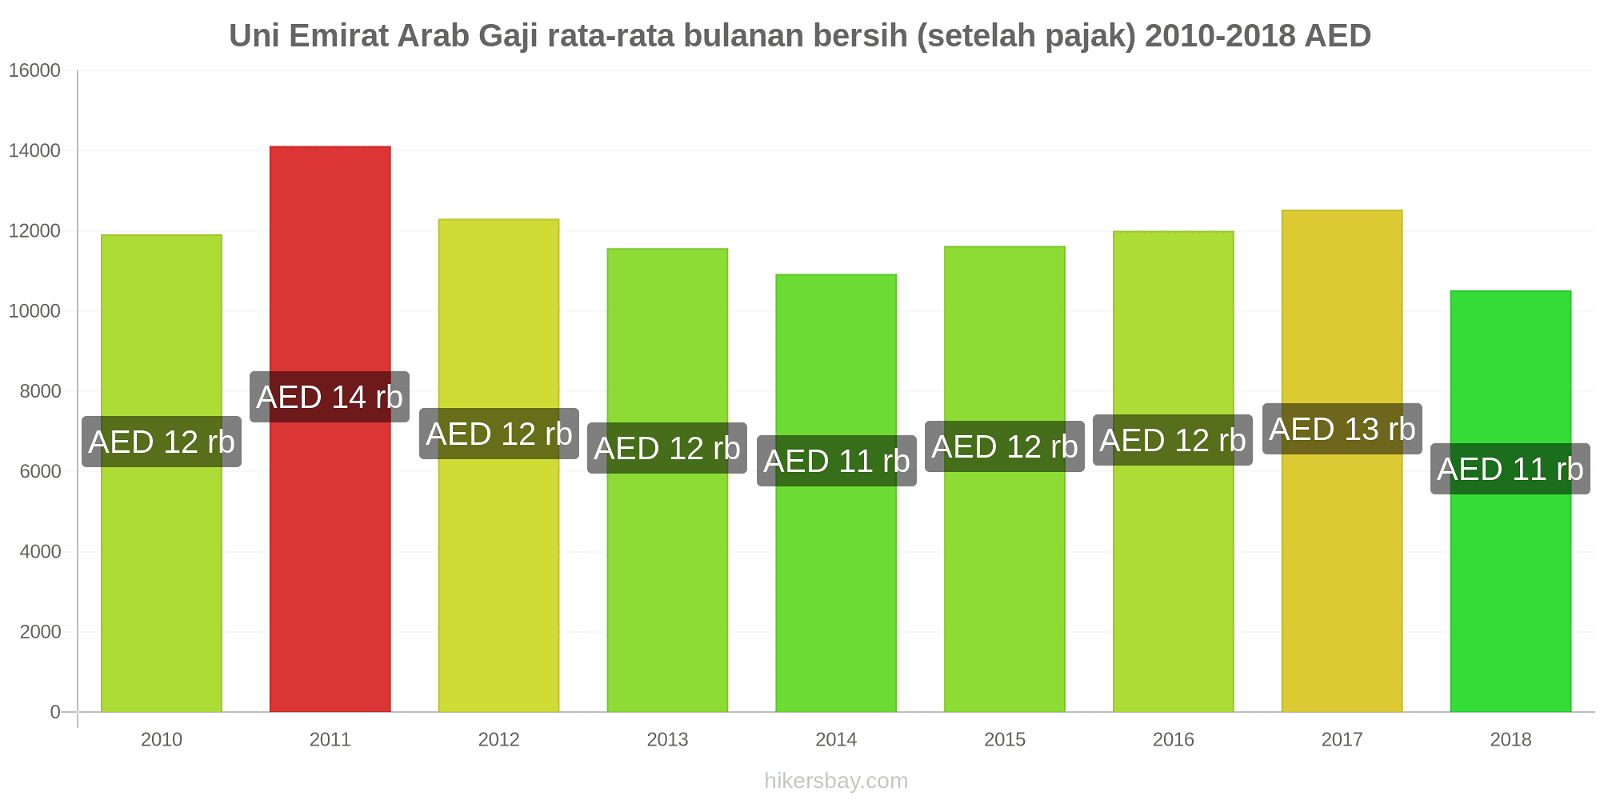 Uni Emirat Arab perubahan harga Gaji bersih rata-rata bulanan (setelah pajak) hikersbay.com